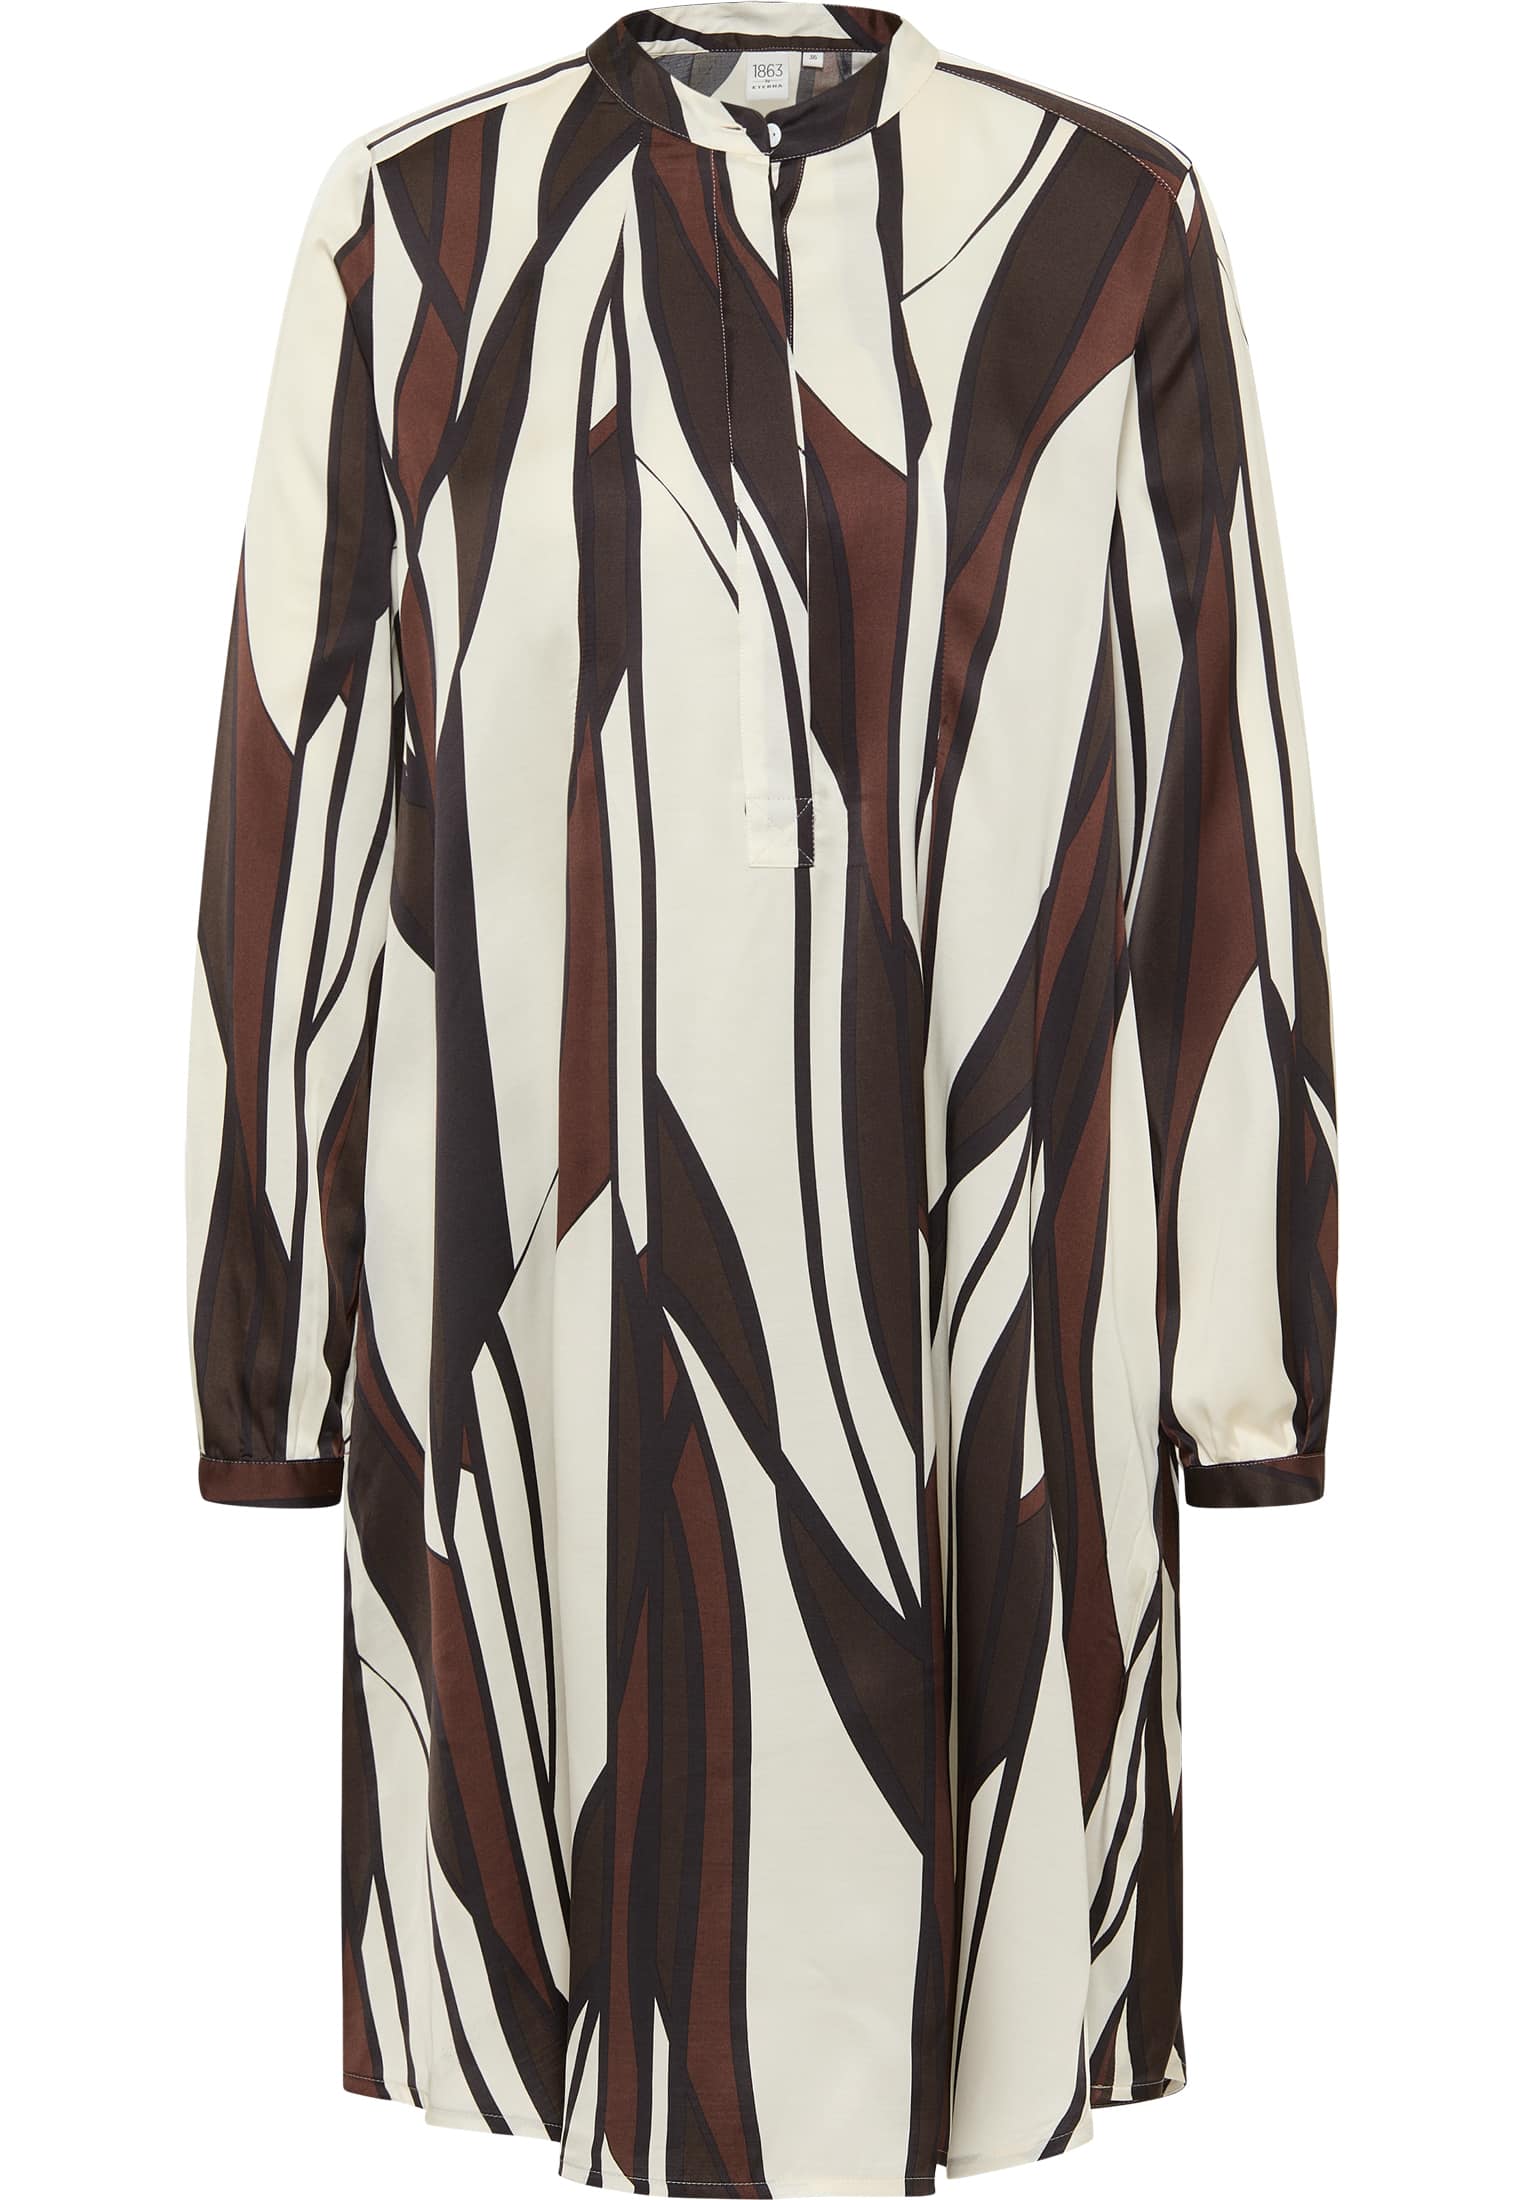 Hemdblusenkleid in brown printed | sleeve | brown | 2DR00259-02-91-44-1/1 long 44 